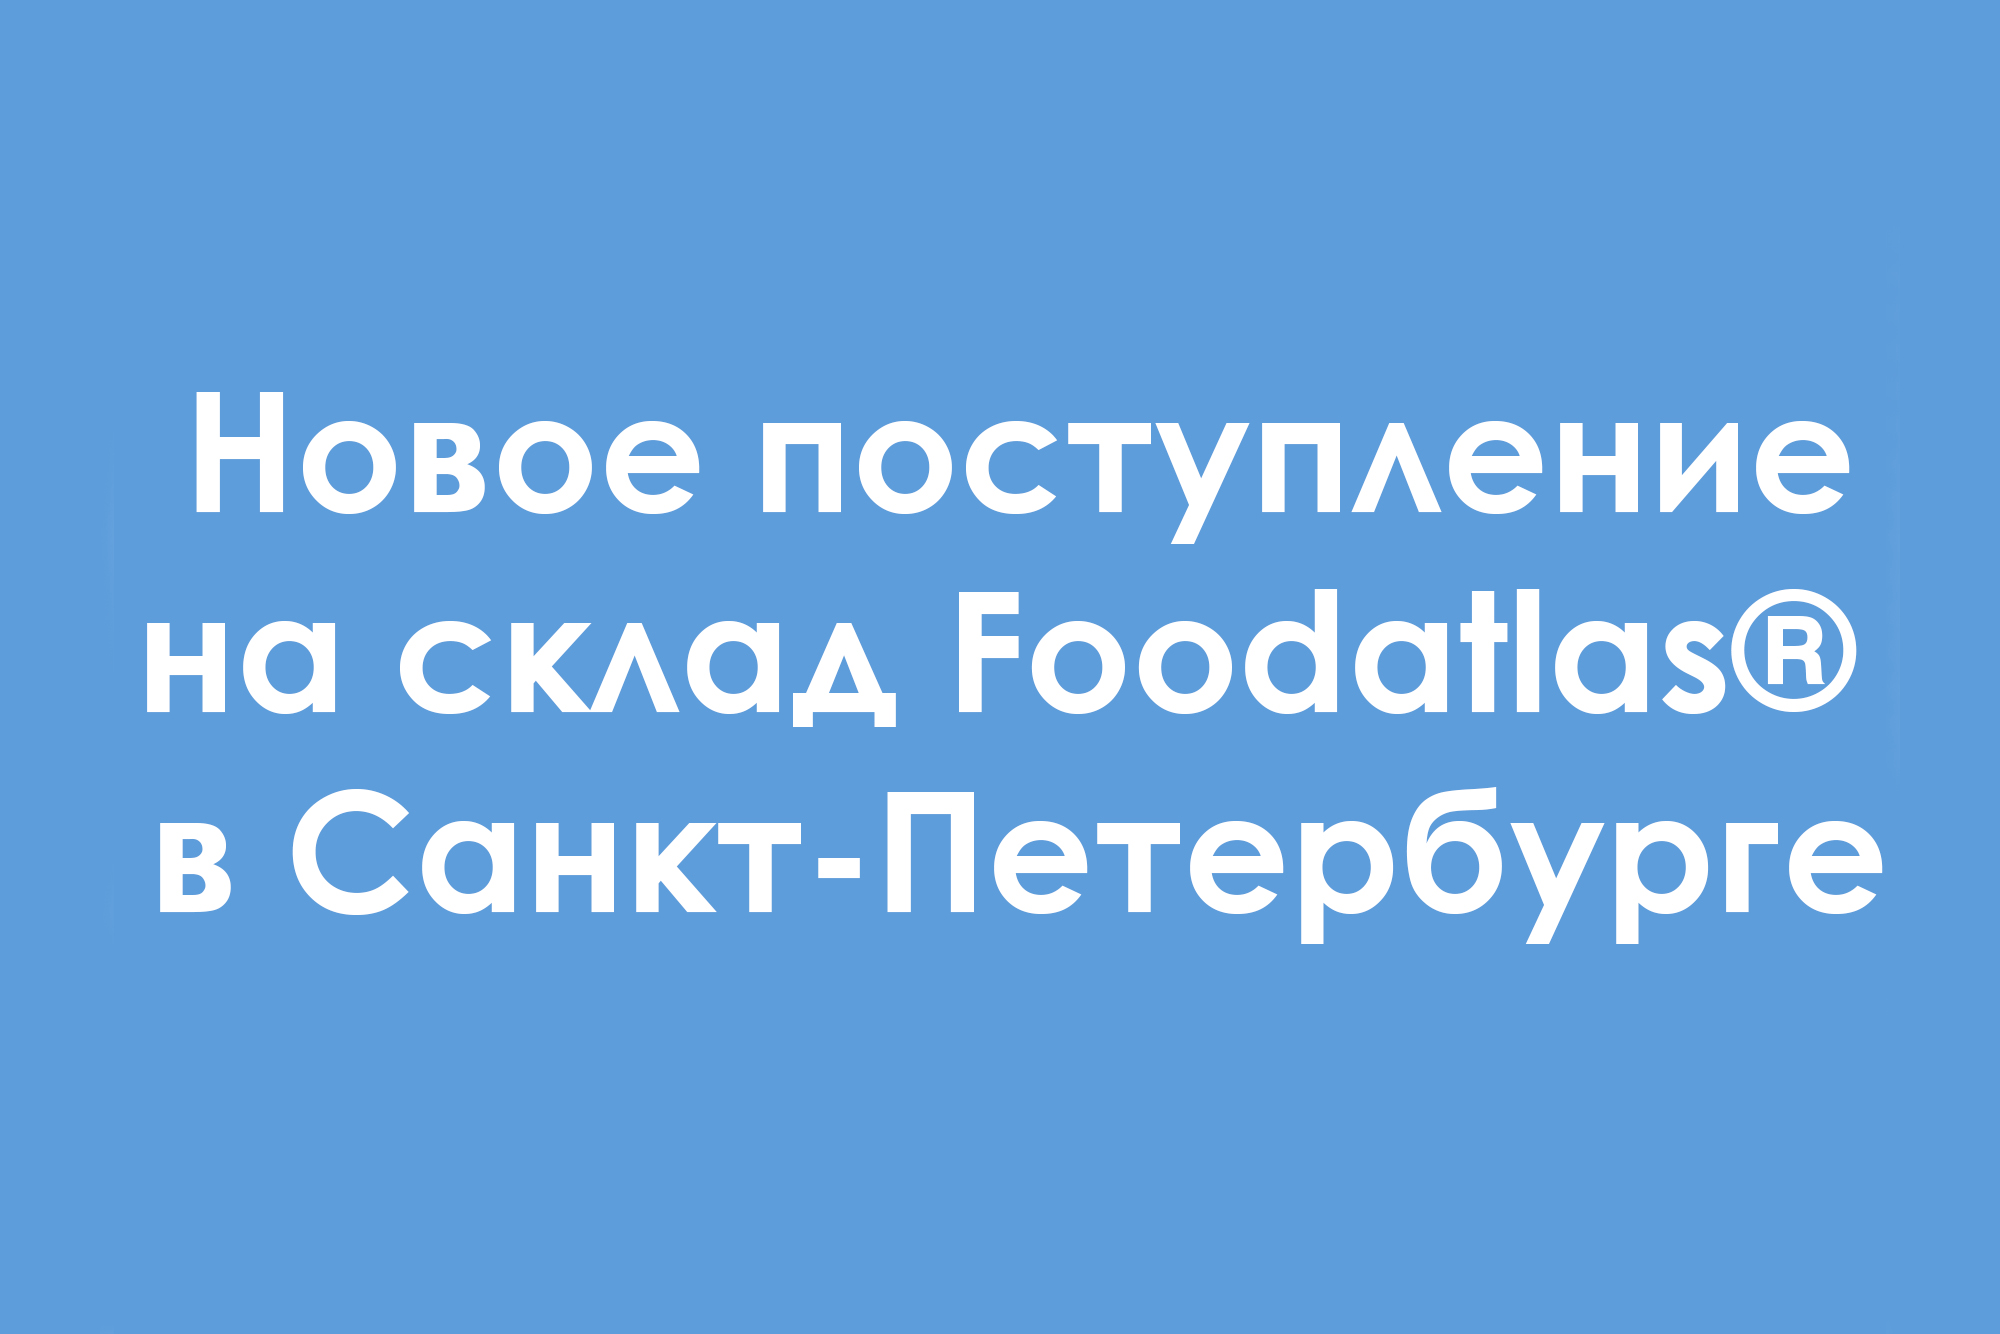 Новое большое поступление на фирменный склад Foodatlas® в Санкт-Петербурге